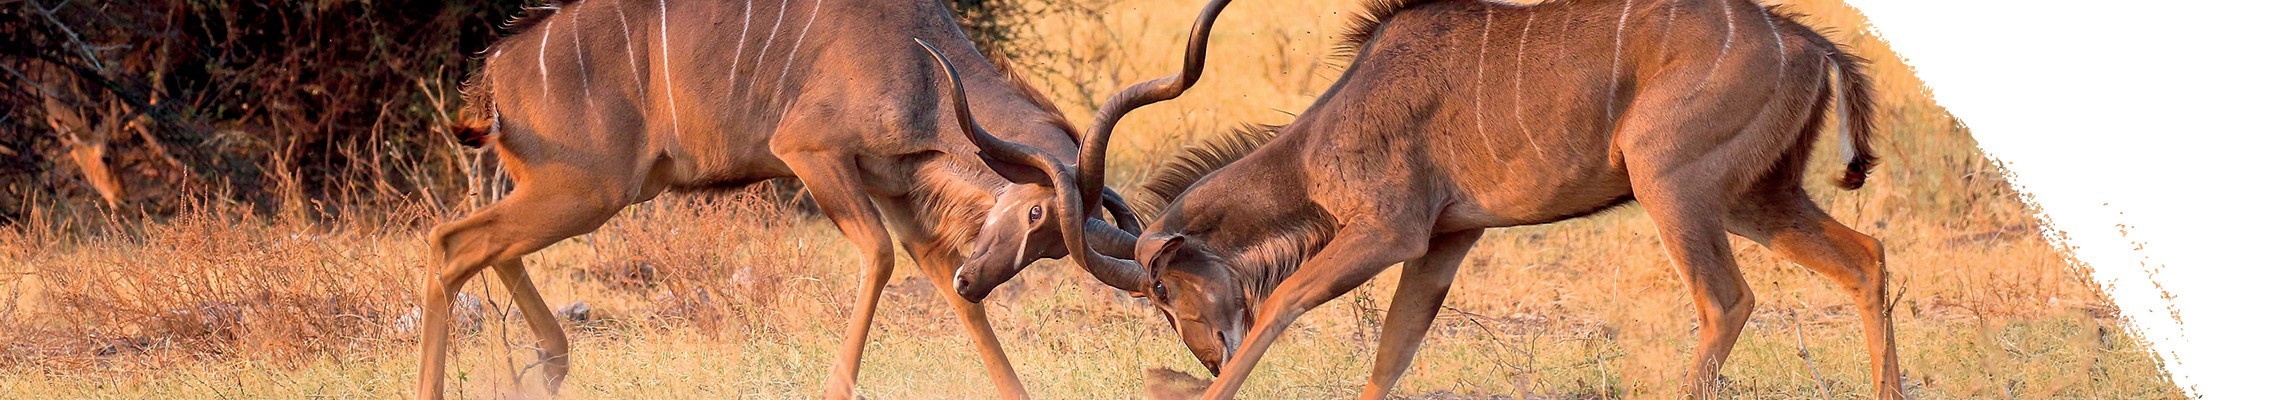 Kudu antilope